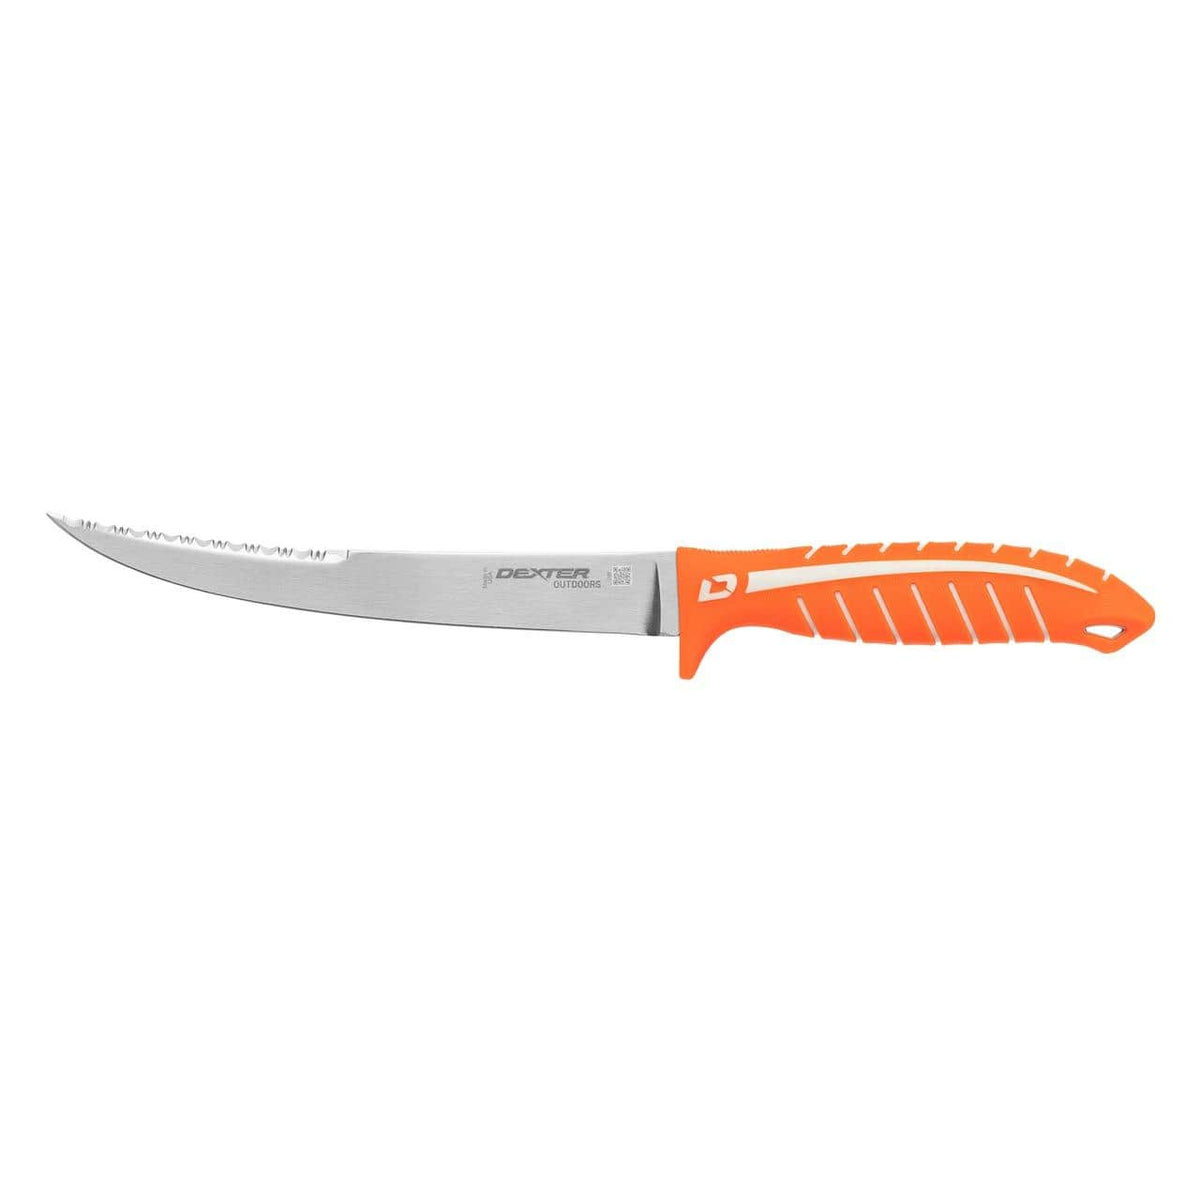 Dexter Dextreme Dual Edge Flexible Fillet Knife